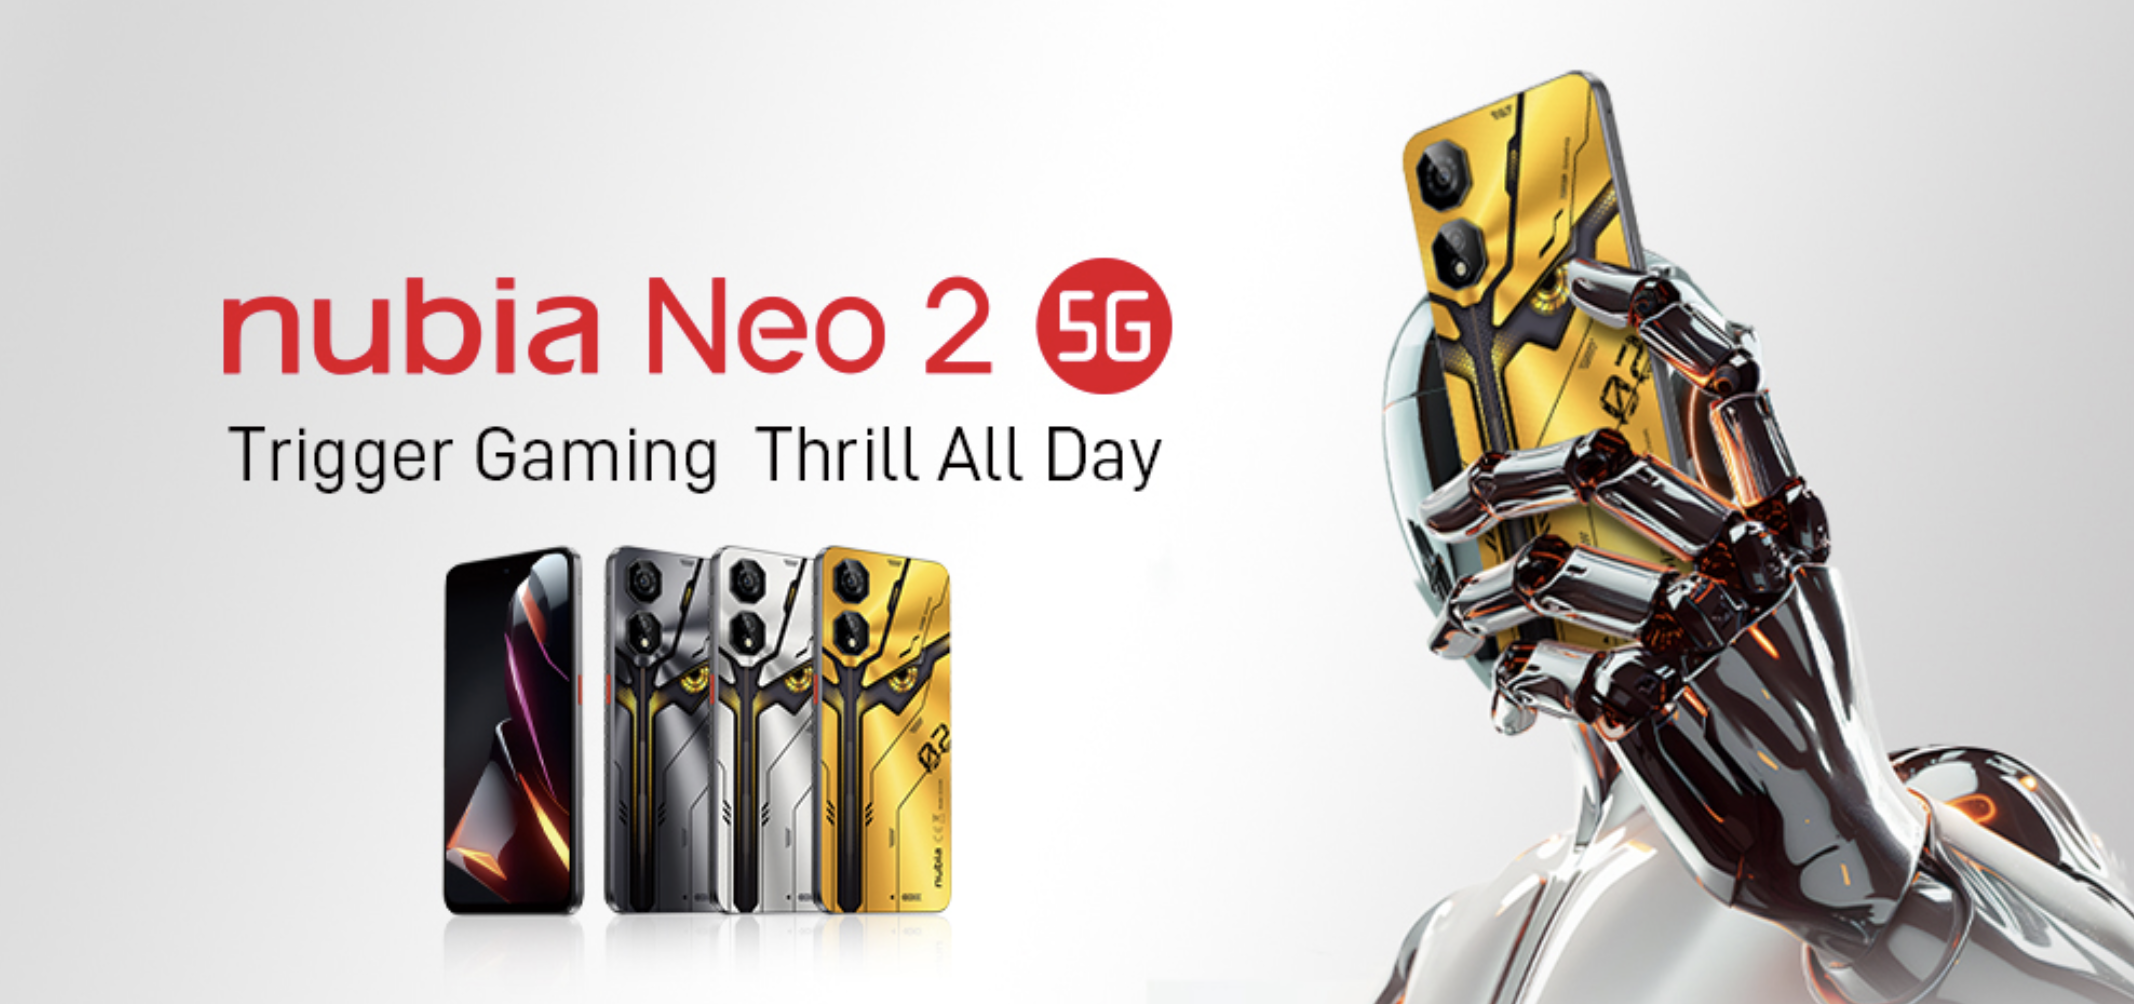 nubia Neo 2 5G: en gaming-smartphone med sideudløsere, 120Hz-skærm og 6000mAh-batteri til $199